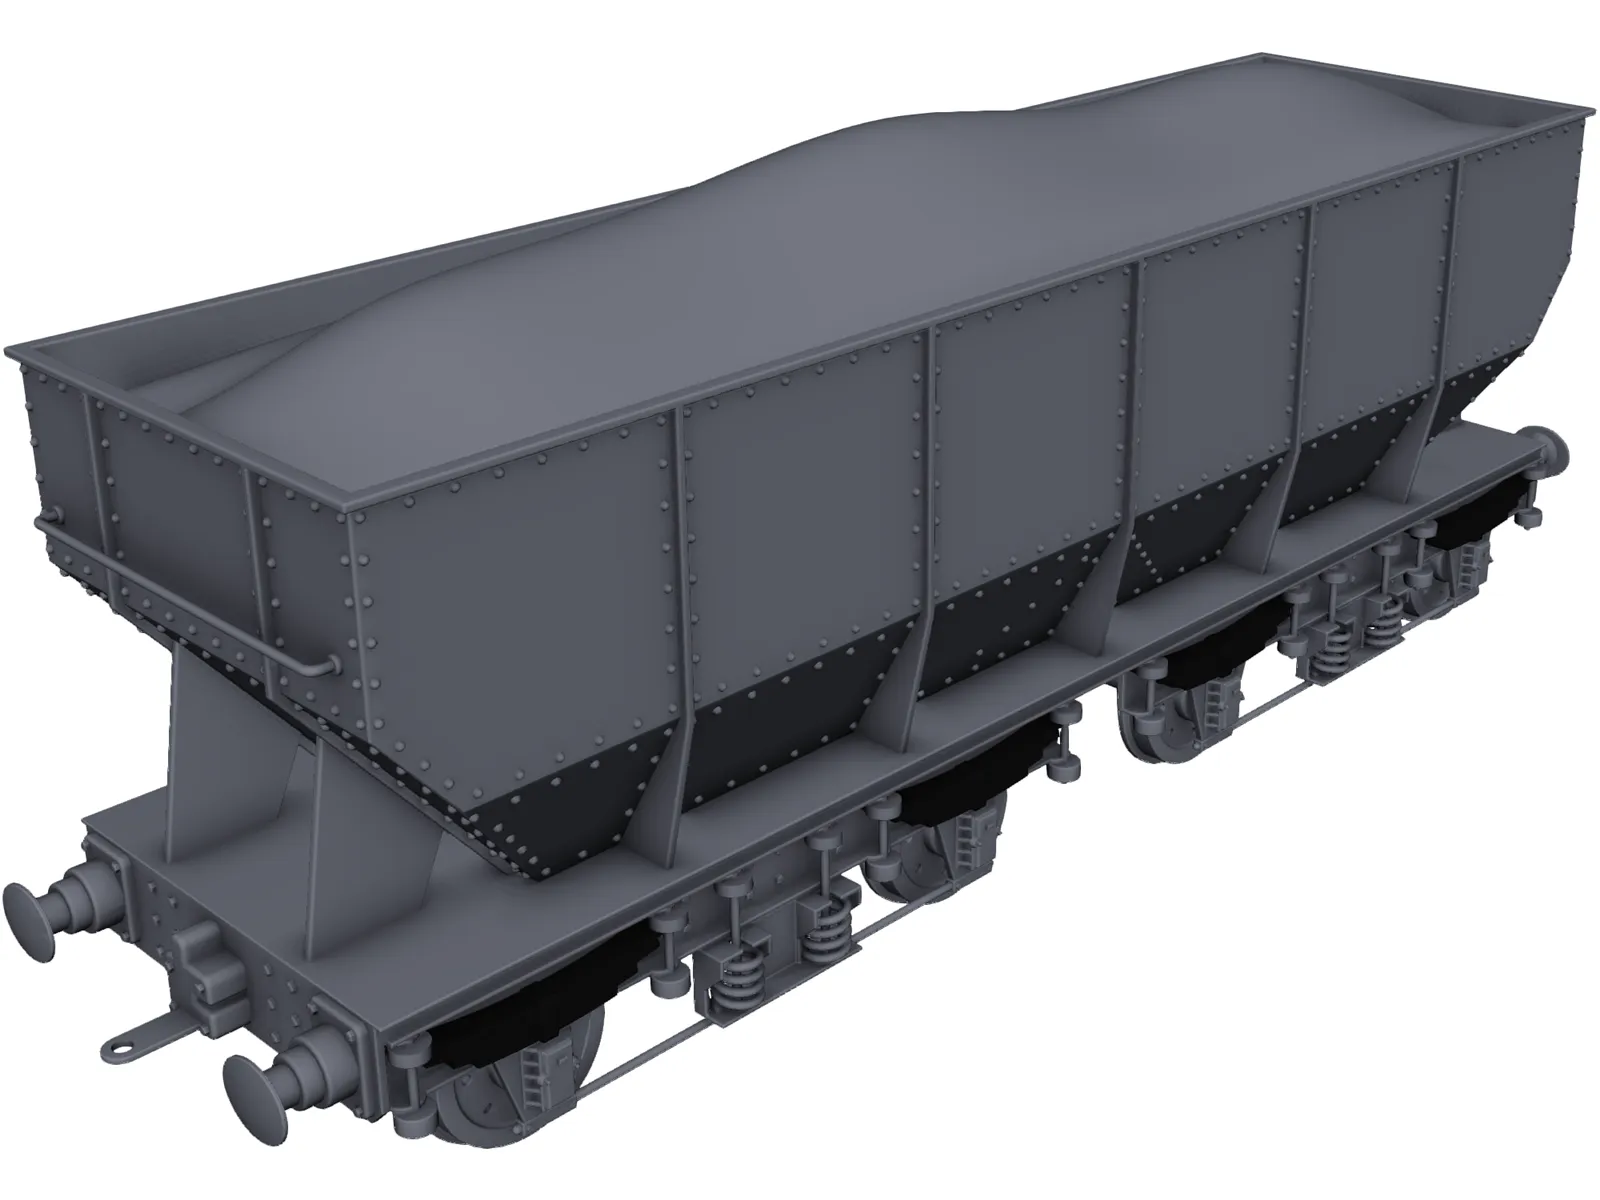 Gresley Coal Wagon 3D Model